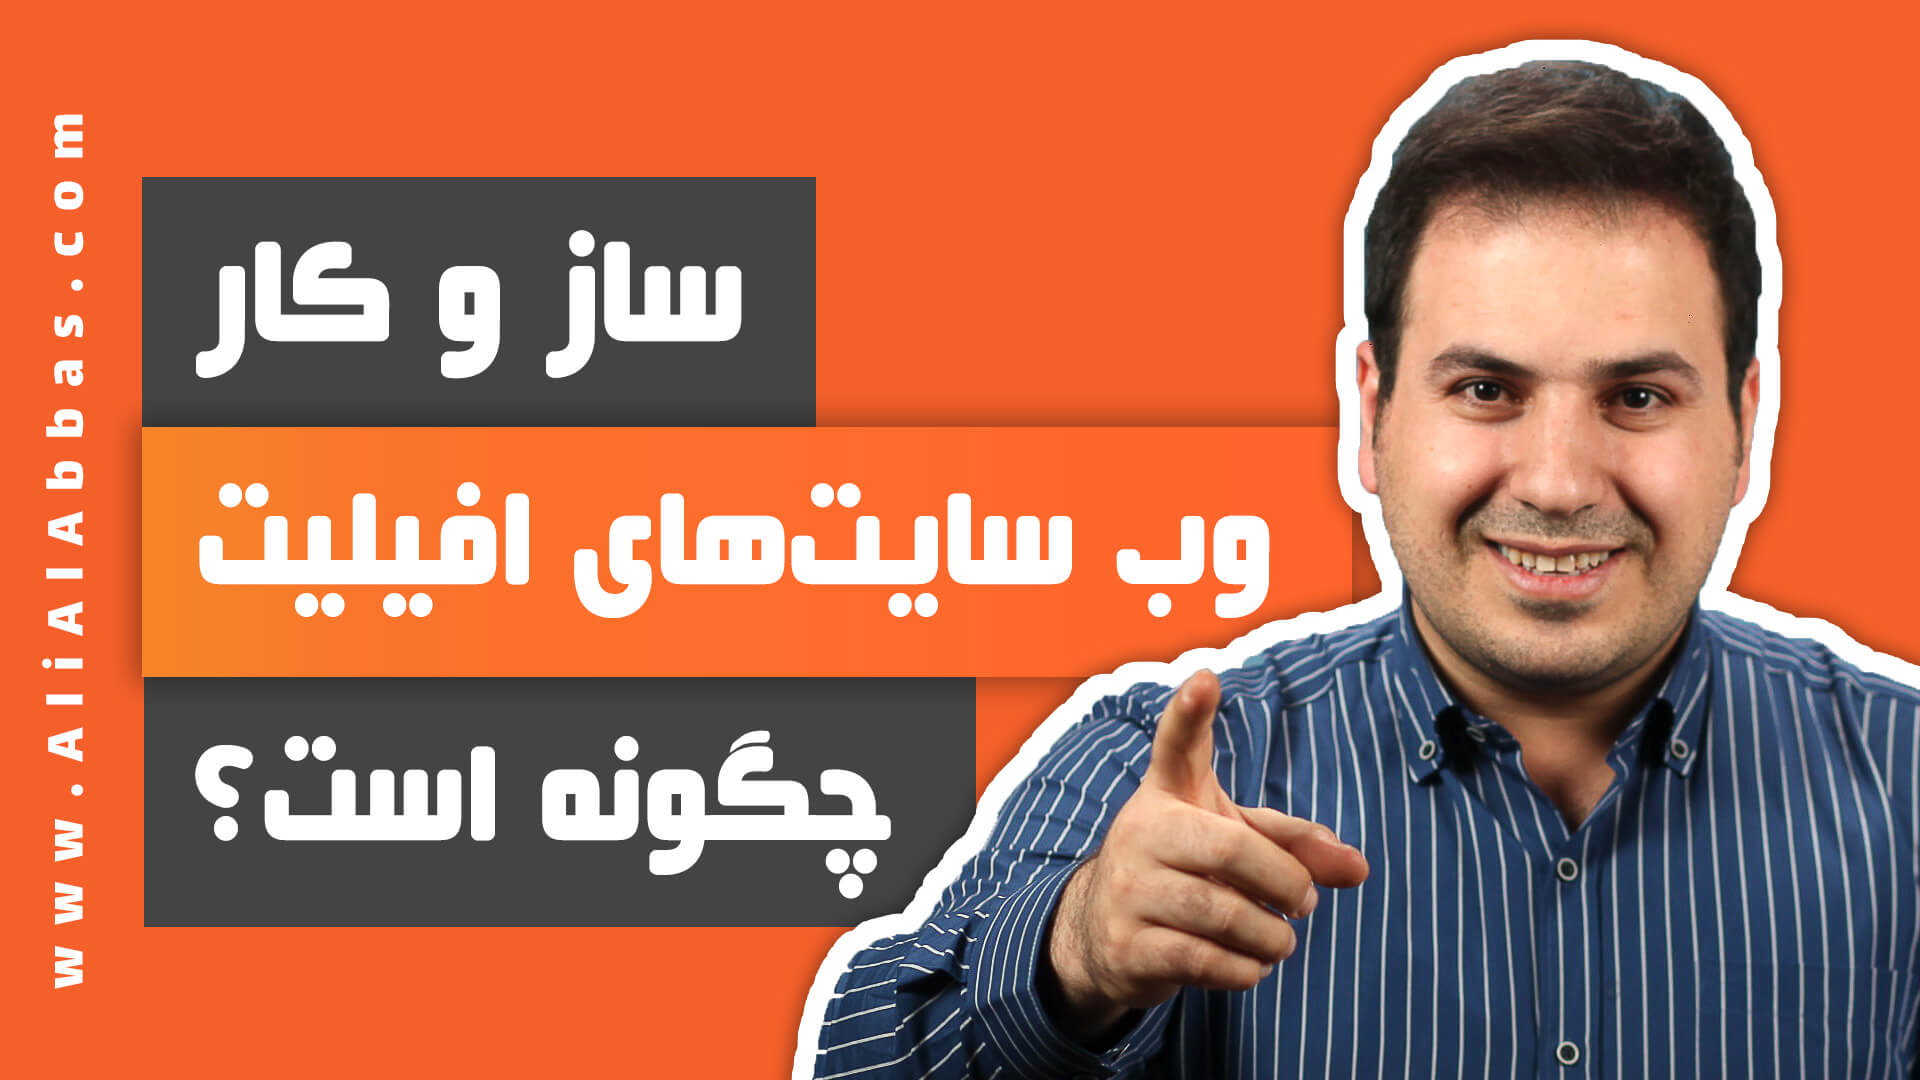 علی آل عباس - ساز و کار وب سایت های افیلیت چگونه است